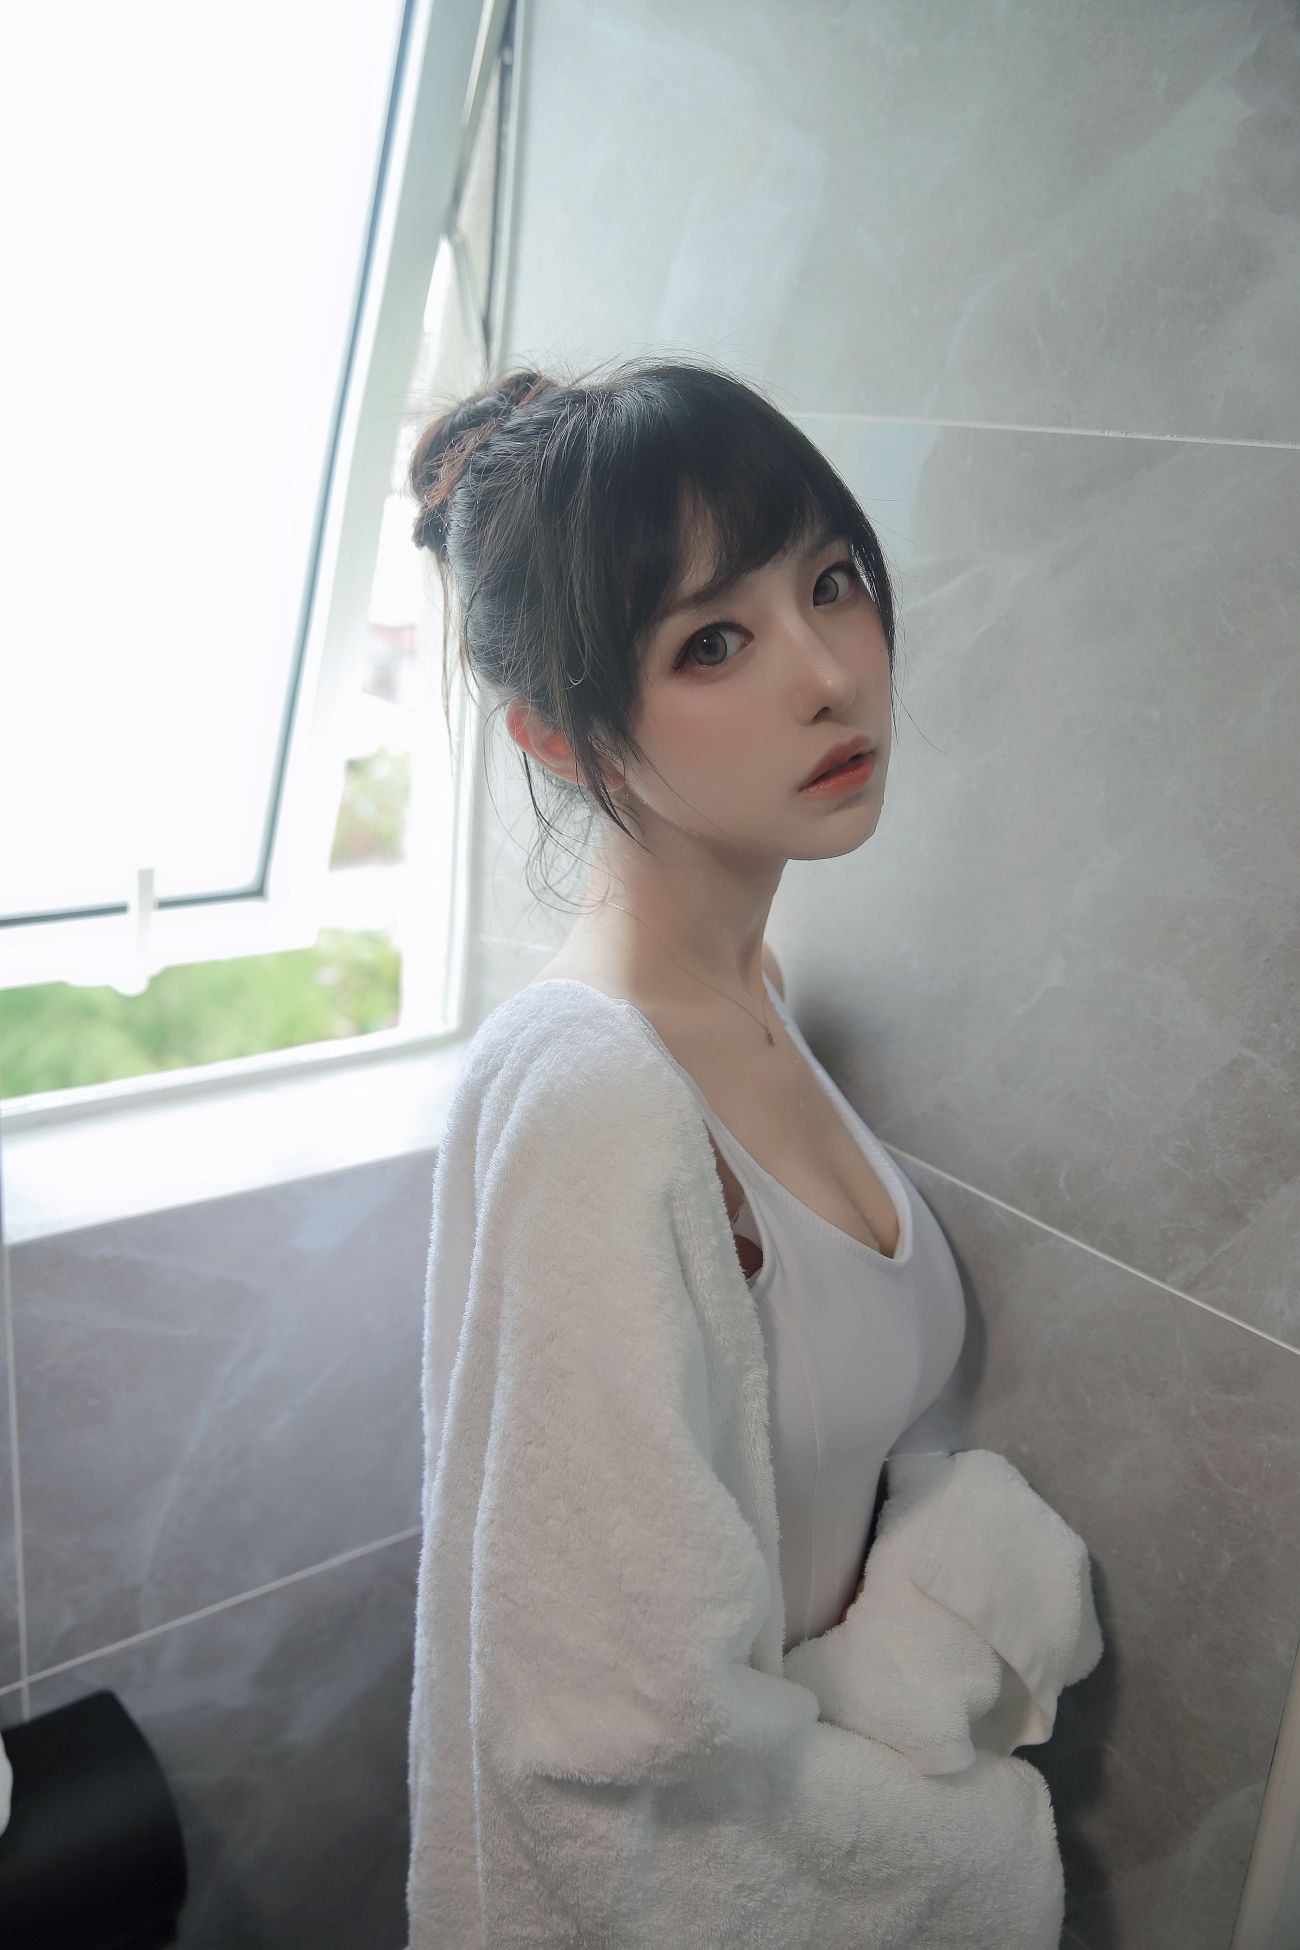 微博美少女Shika小鹿鹿性感Cosplay写真半透浴室 (18)